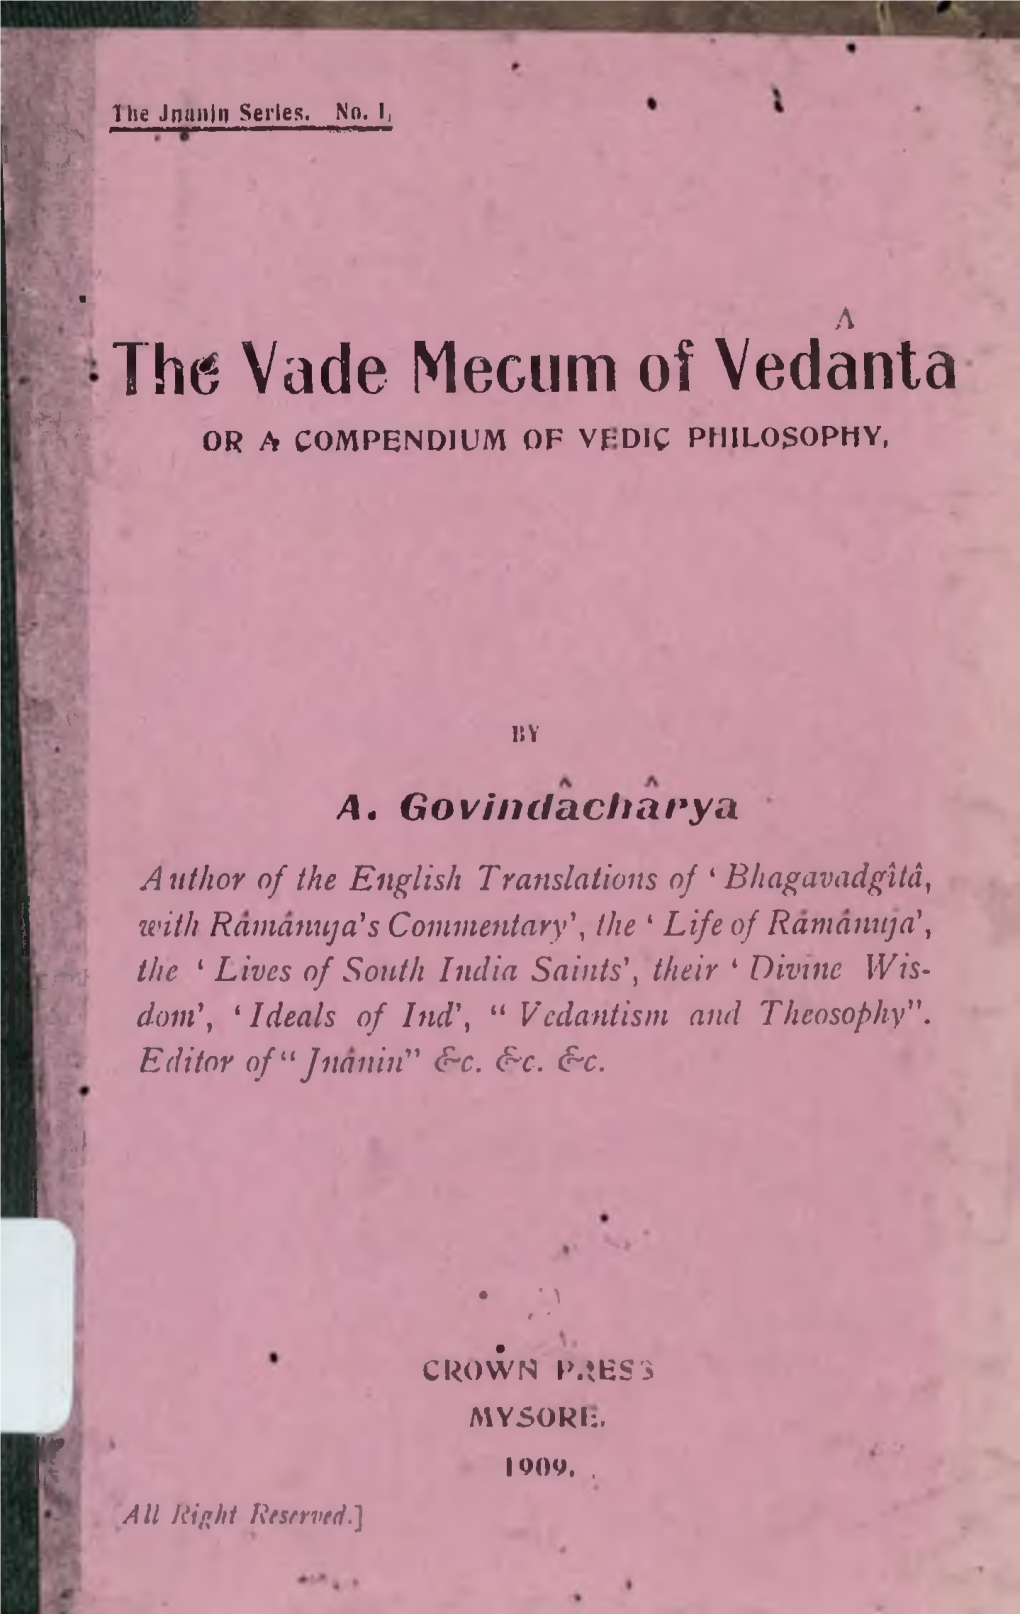 Ih(5 Vade Mecum of Vedanta M I- OR a COMPENDIUM of Vf-DIC PHILOSOPHY